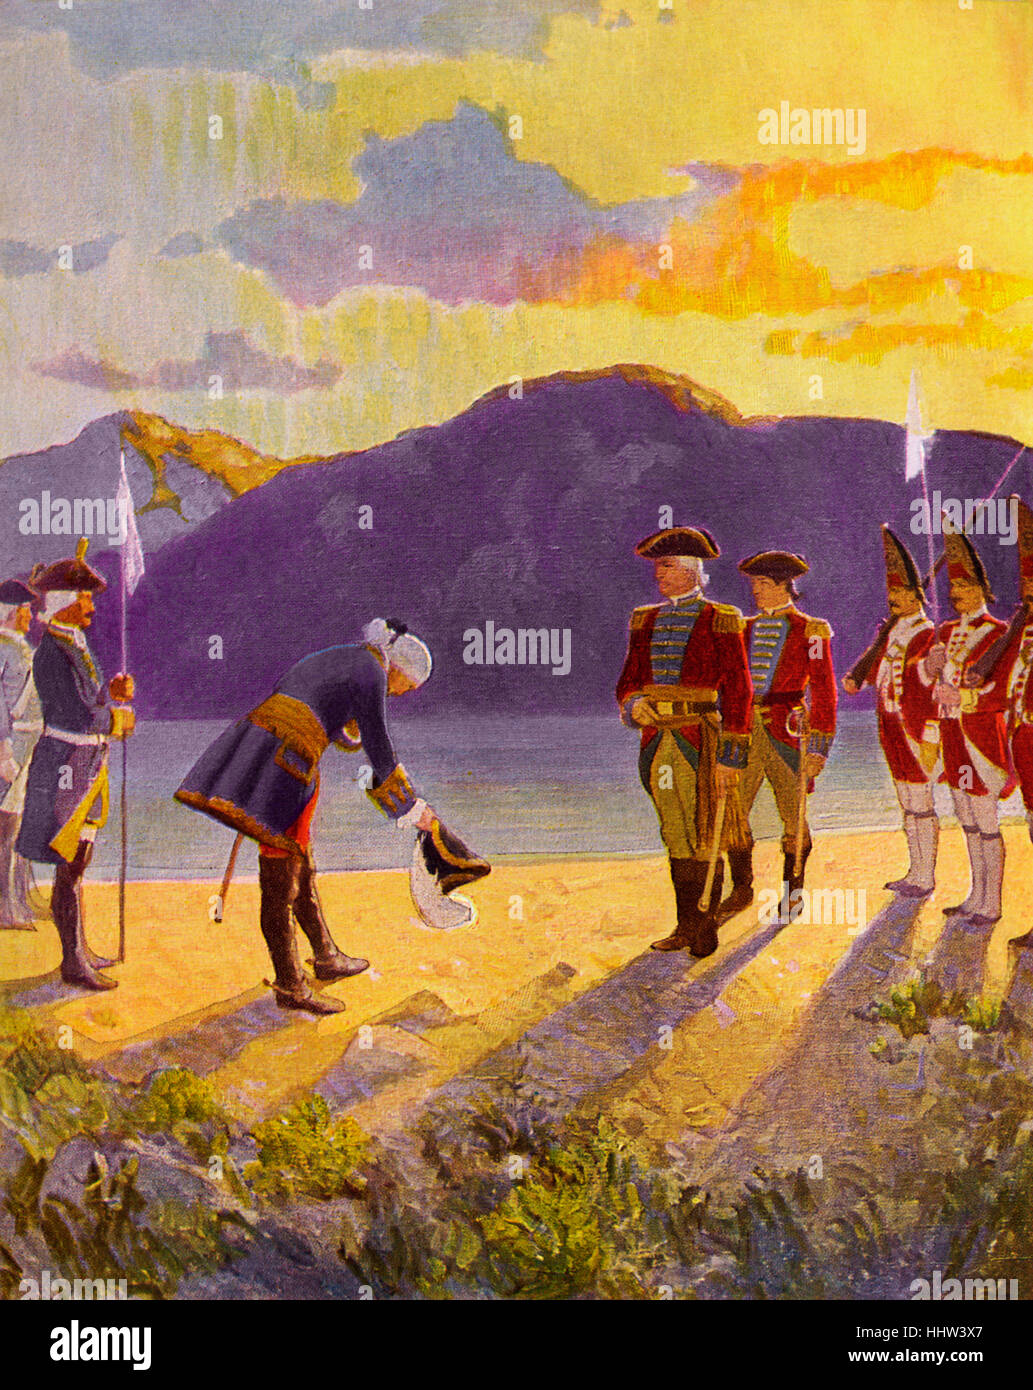 Der letzte der Mohikaner; eine Erzählung von 1757 von James Fenimore Cooper. Bildunterschrift lautet: "das Treffen der Generäle. Sobald Stockfoto